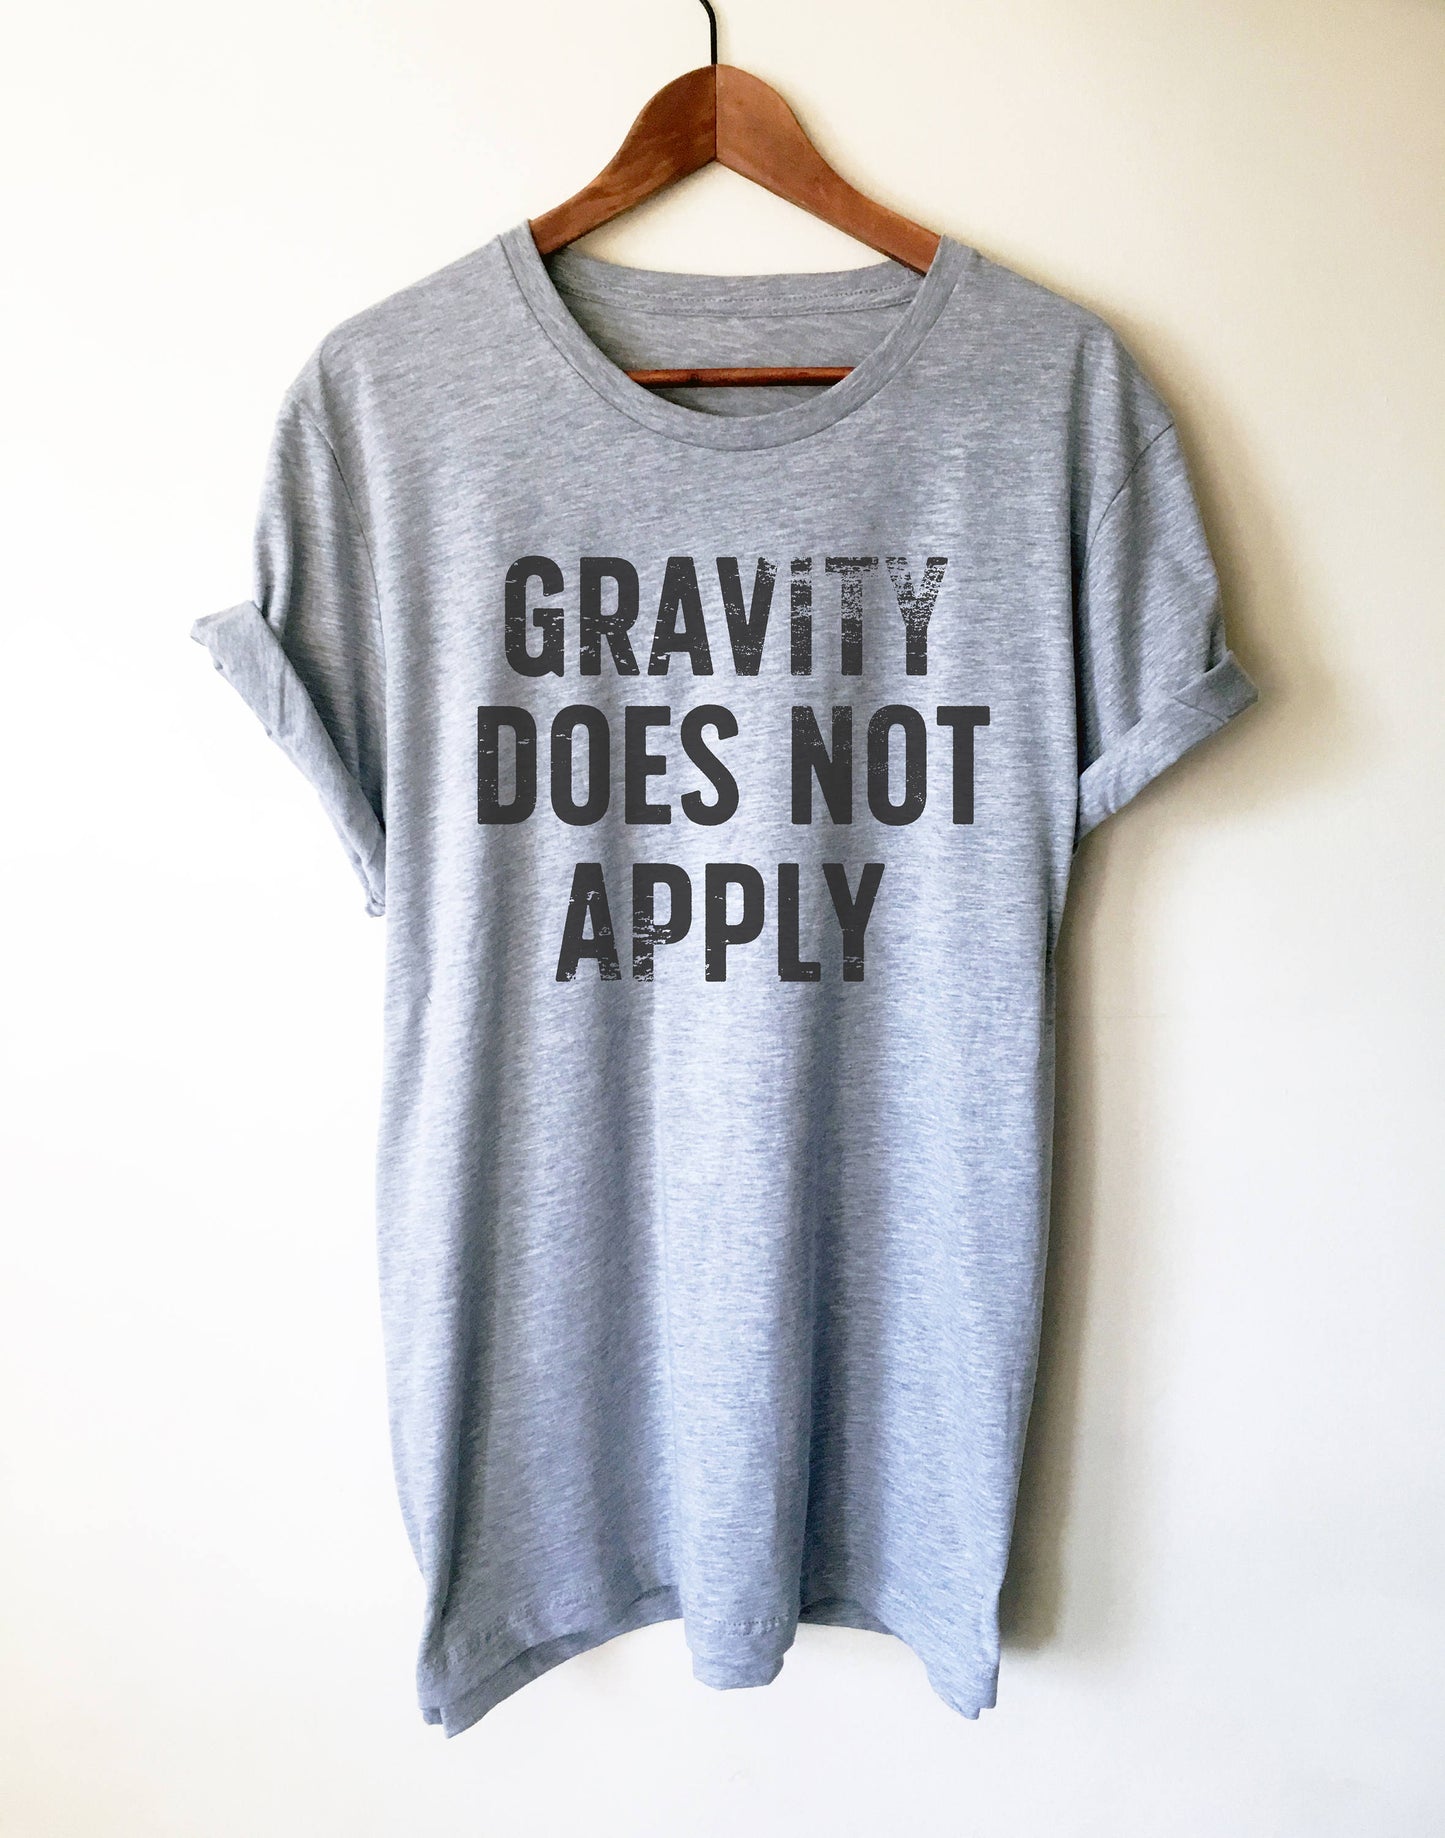 Gravity Does Not Apply Unisex Shirt - Rock climbing shirt, Hiking shirt, Pilot shirt, Pilot Gift, Parachute t shirt, Climbing shirt